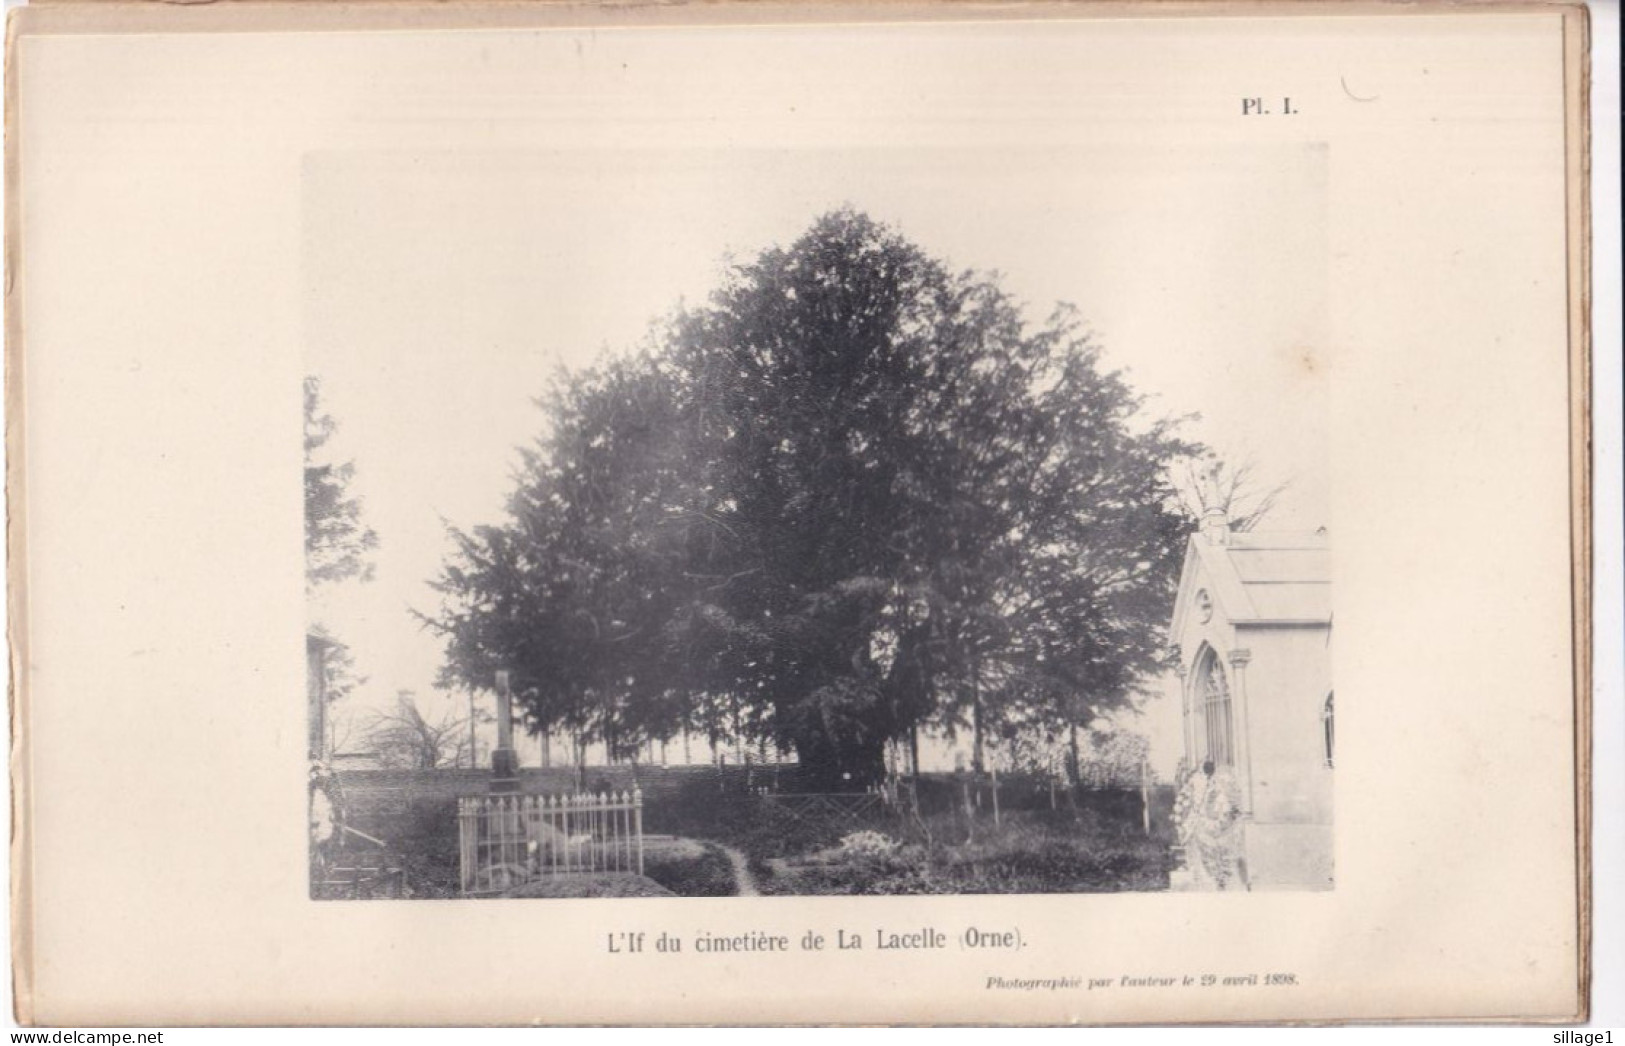 La Lacelle (Orne 61) L'If Di Cimetière De La Lacelle (Orne) - Planche - Photographié Le 29 Avril 1898 - Autres Plans